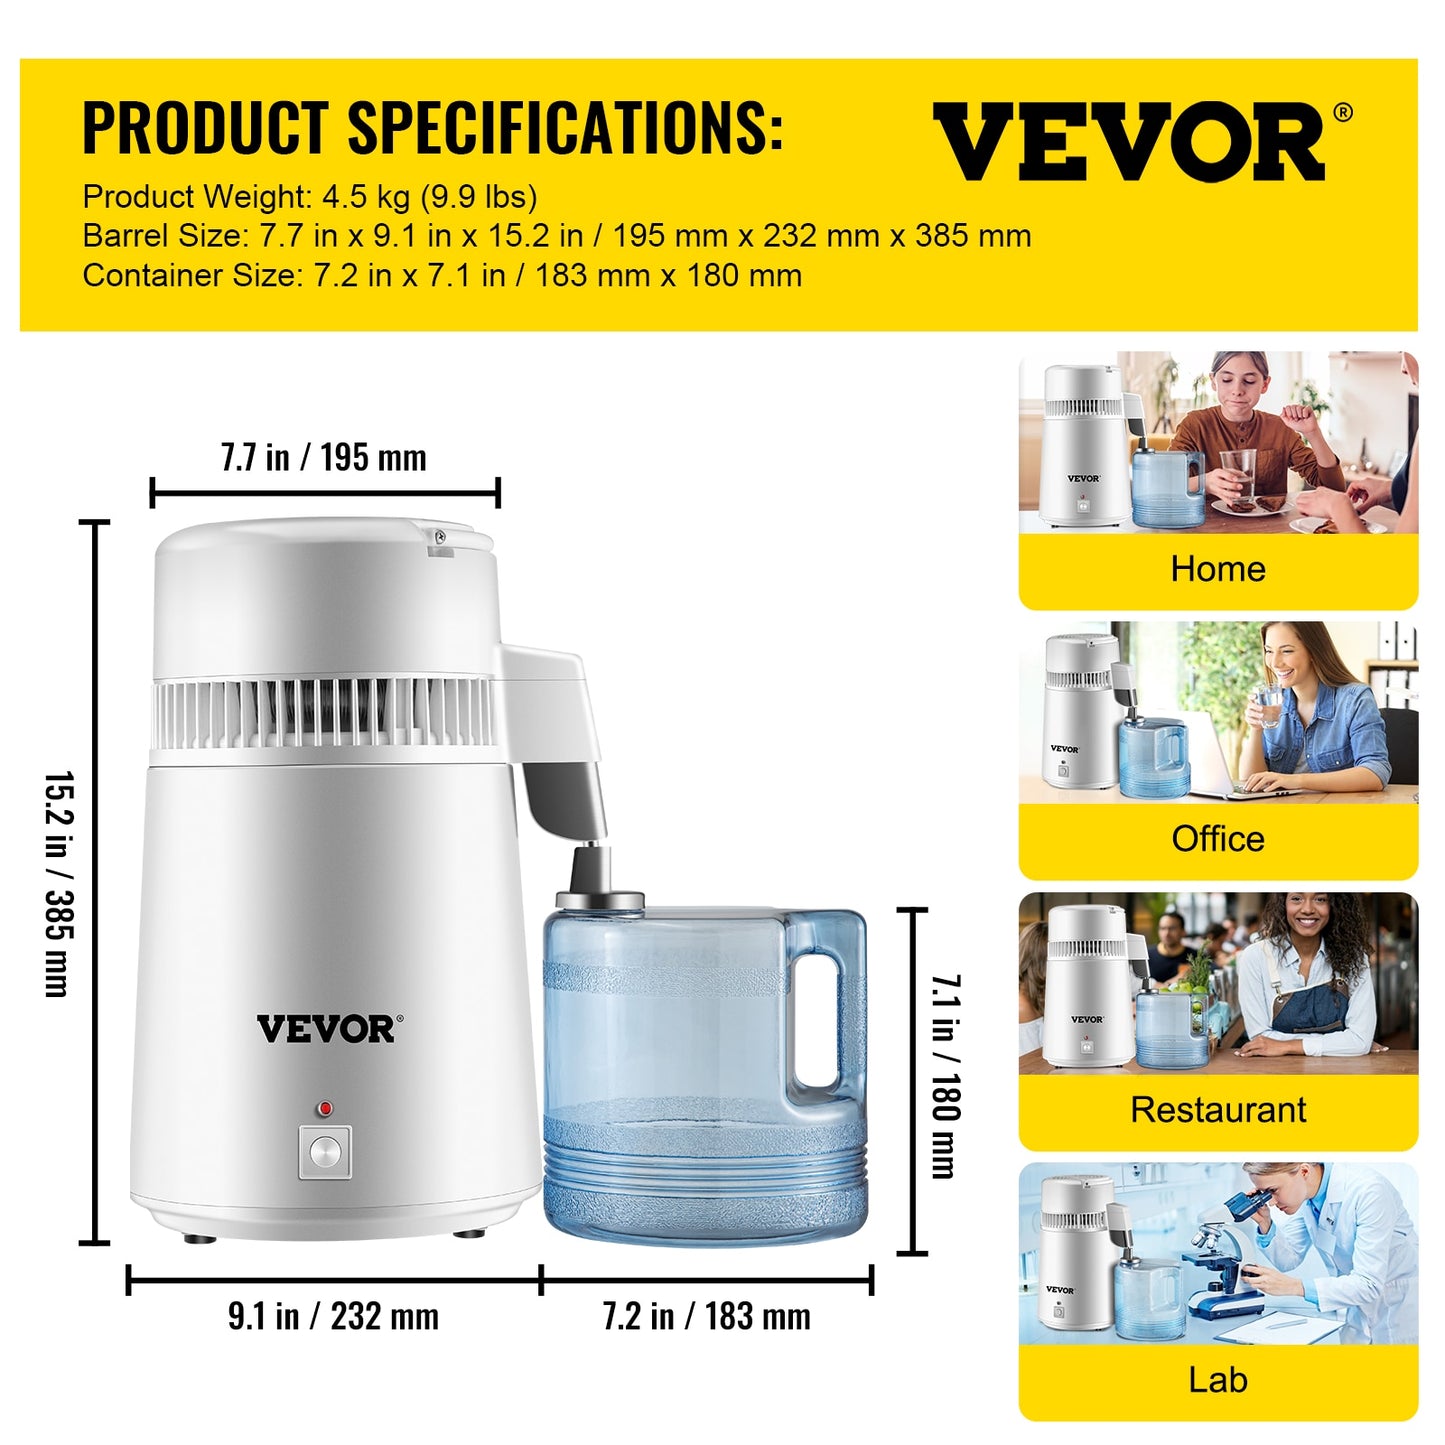 VEVOR 4L Water Distiller Purifier Filter Dispenser Heating Drinking Bottle Softener 304 Stainless Steel Home Appliance for Offic